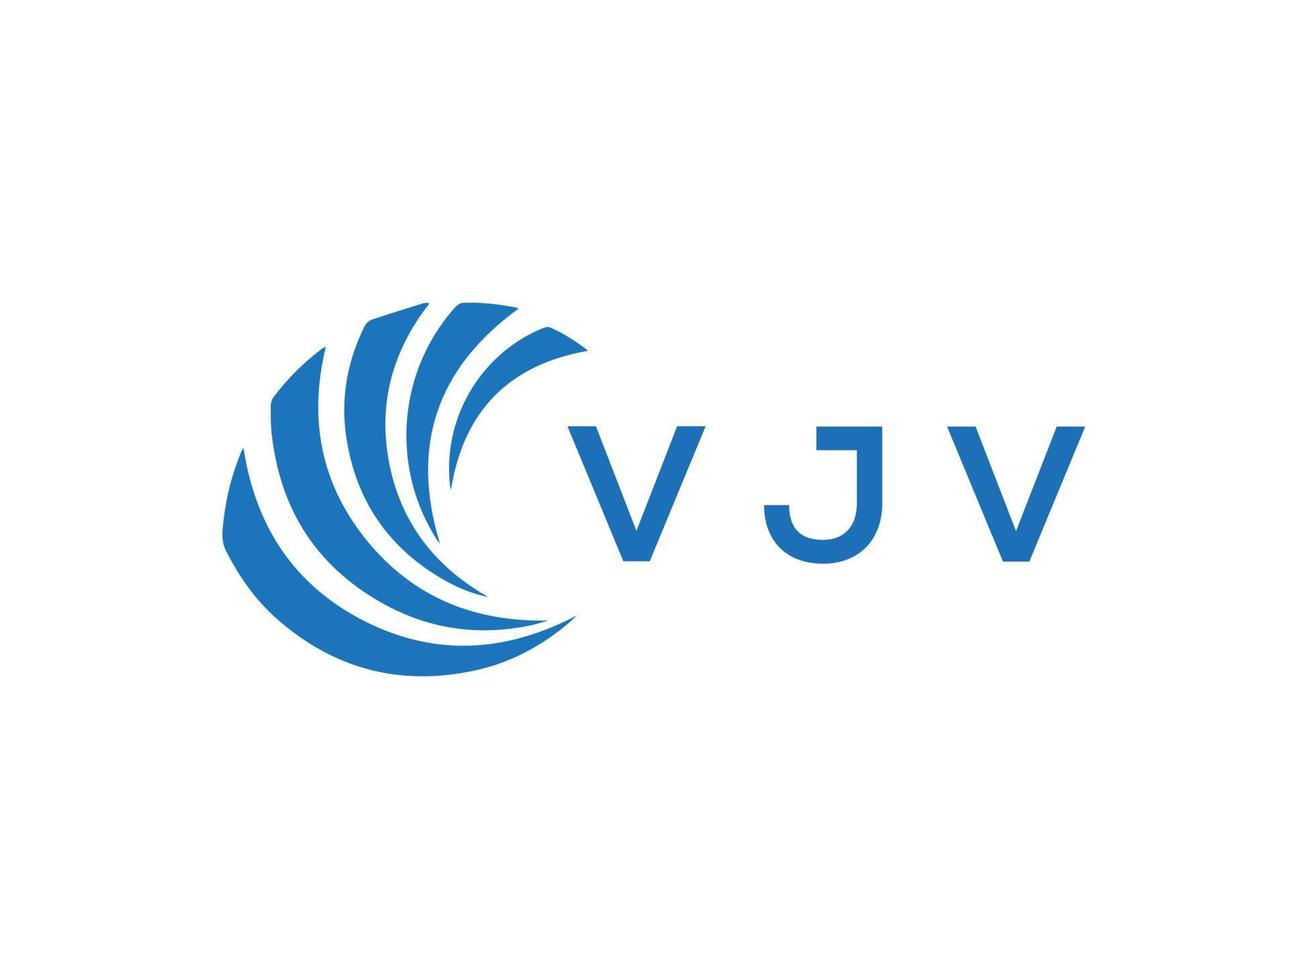 VJV letter logo design on white background. VJV creative circle letter logo concept. VJV letter design. vector